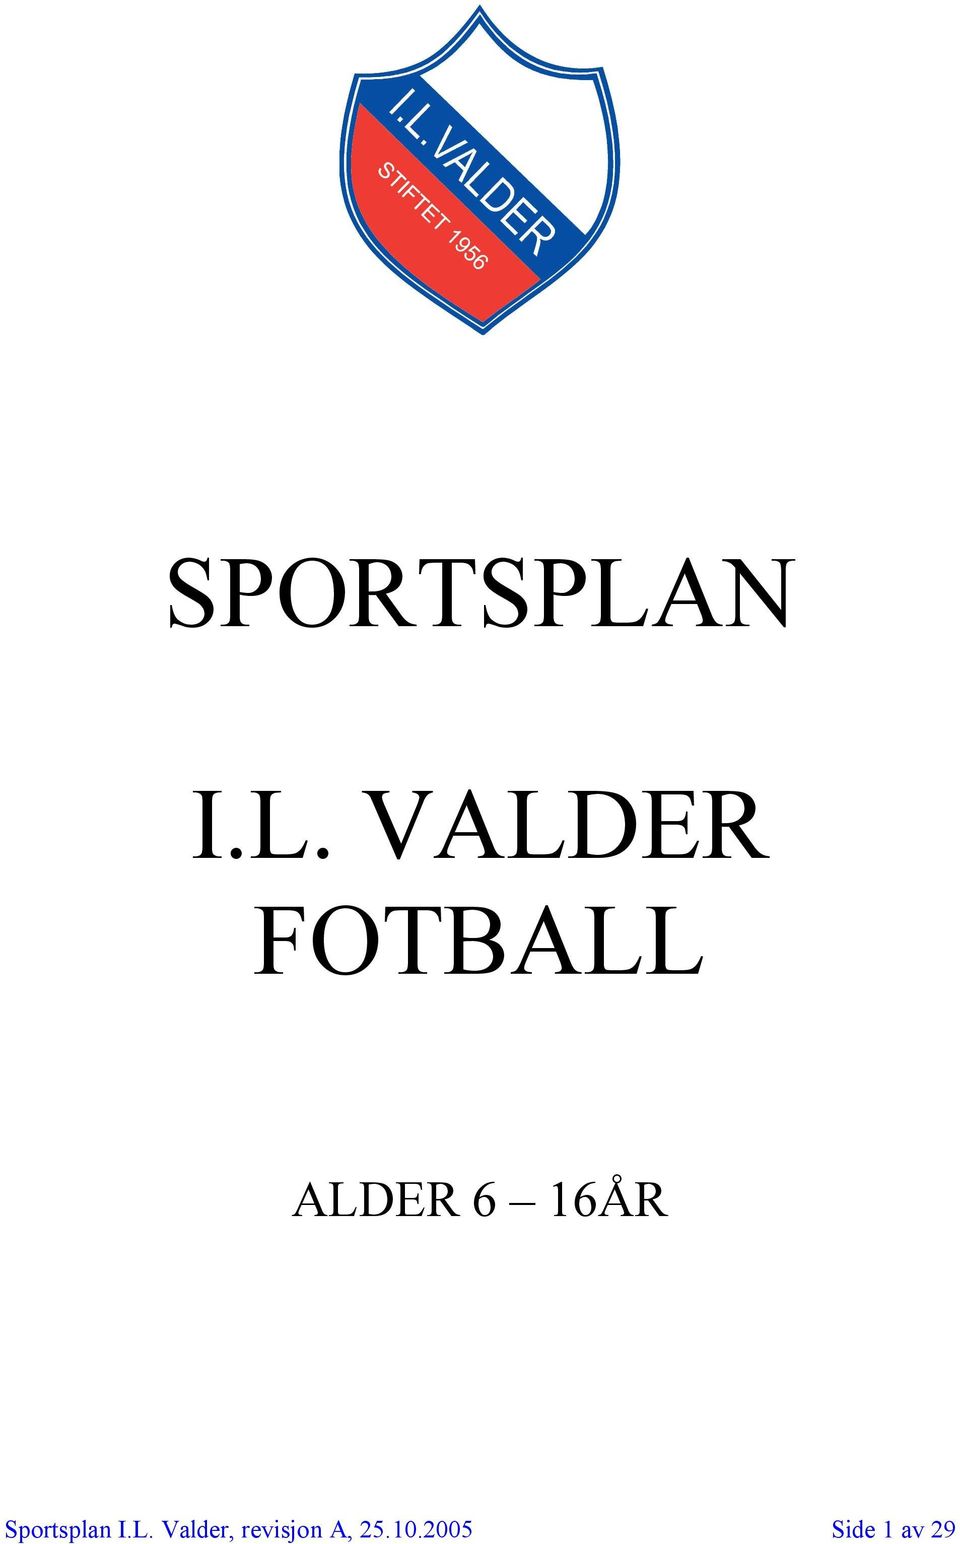 VALDER FOTBALL ALDER 6